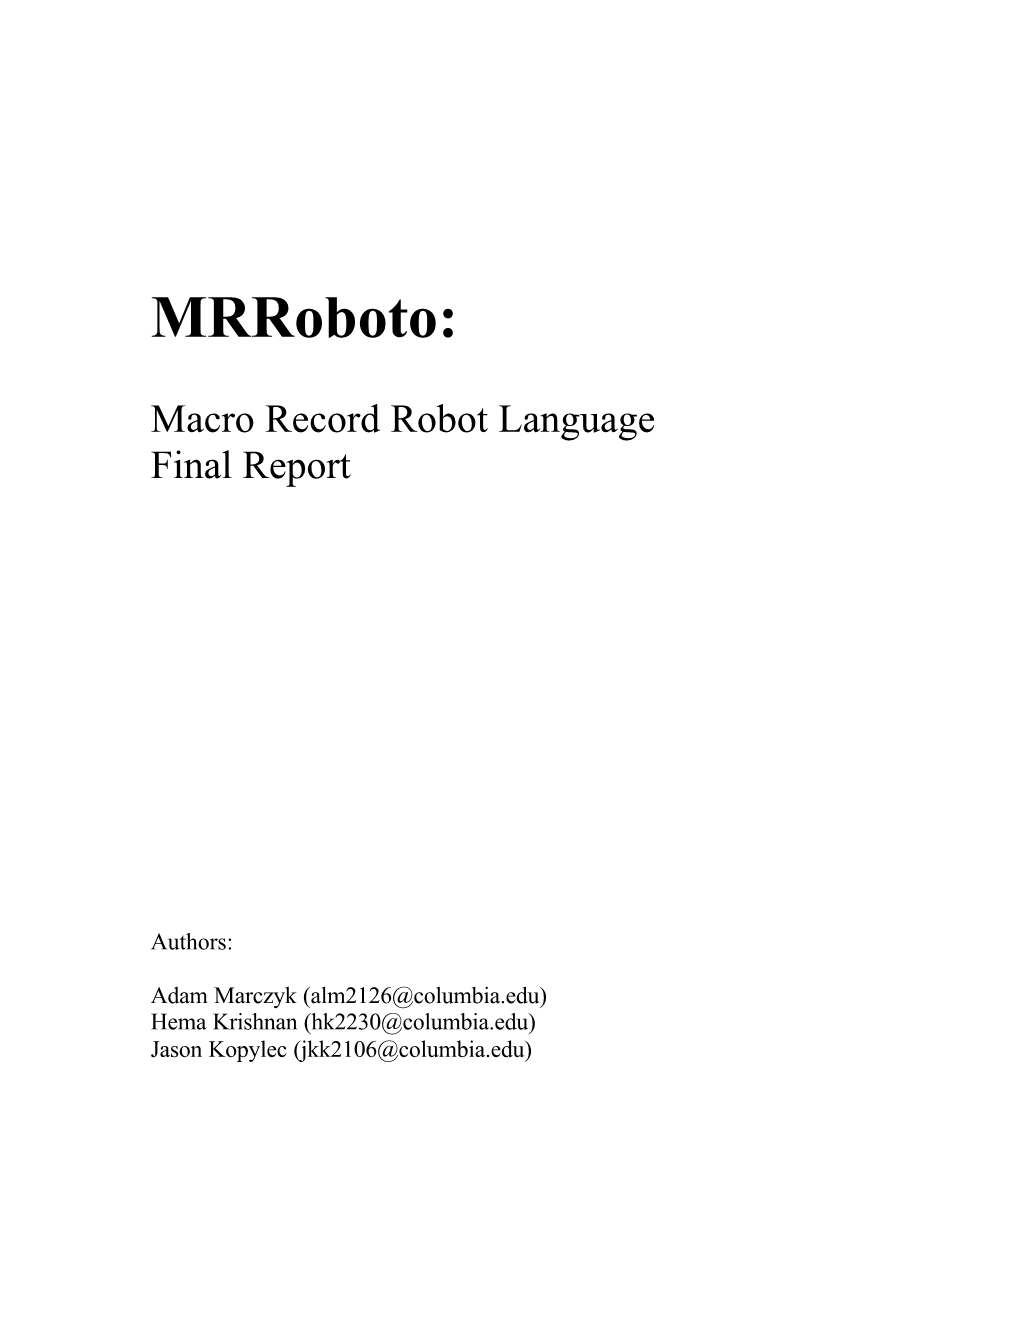 Mrroboto Final Report